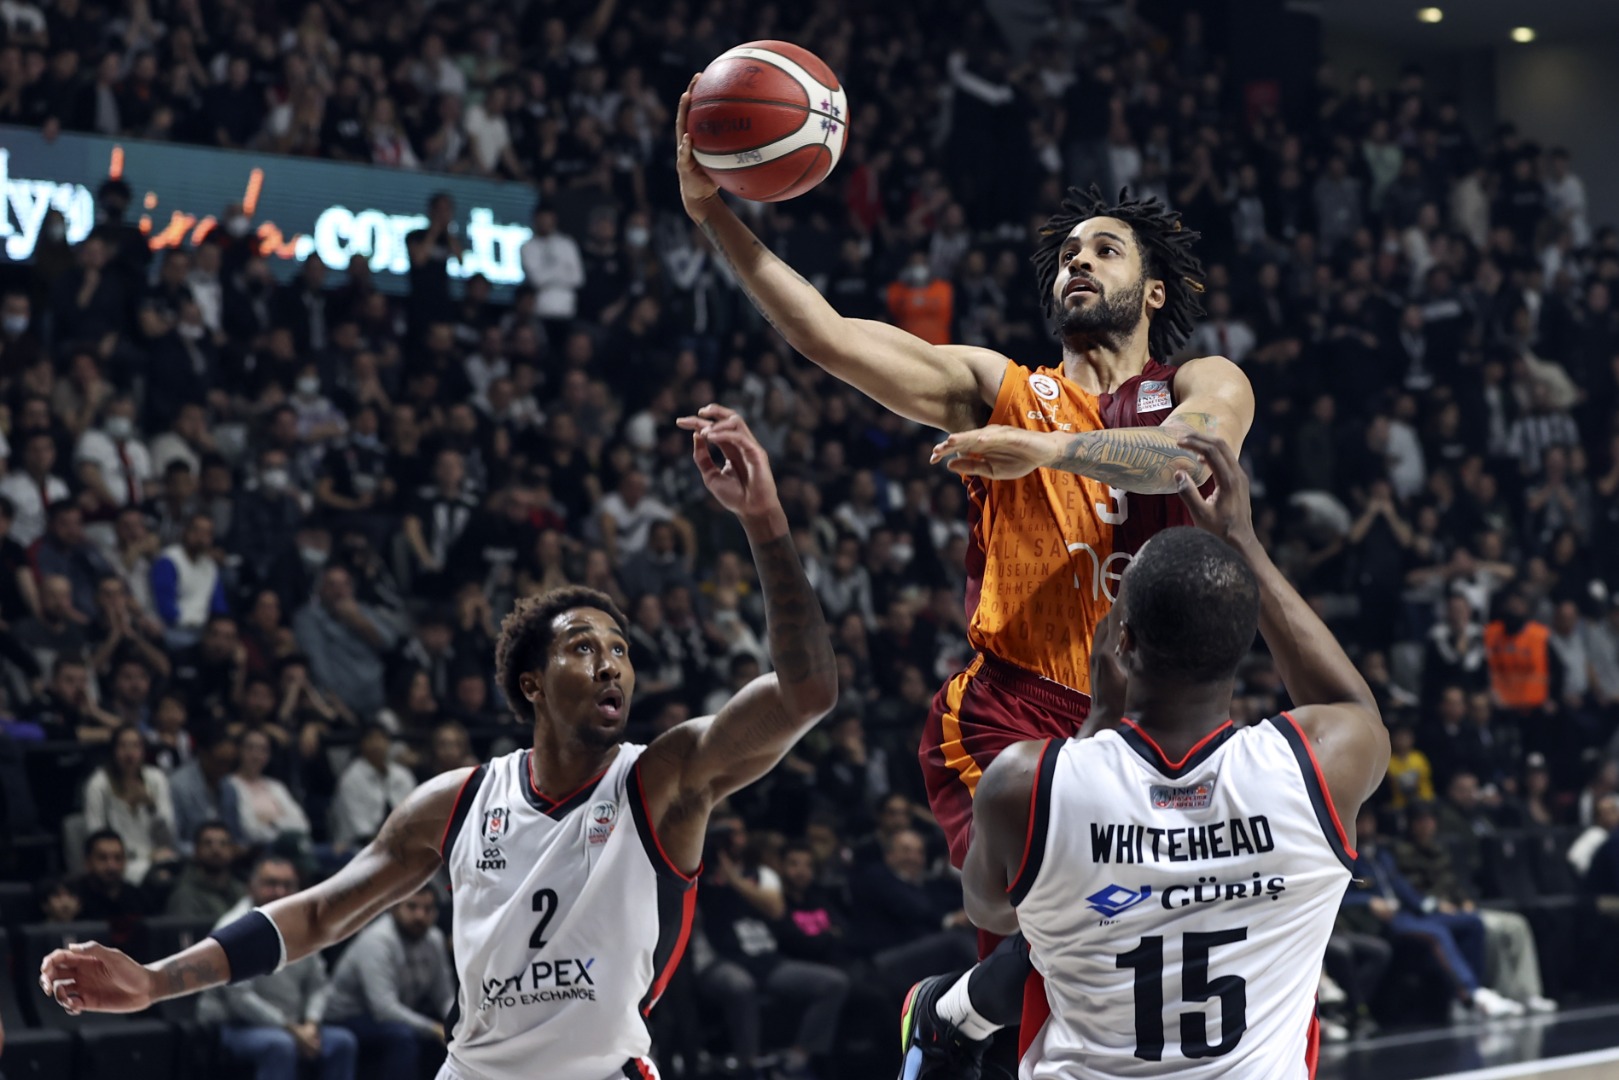 Beşiktaş Icrypex-Galatasaray Nef: Olaylı maçta 10 sayı farkı kapattı, kazandı